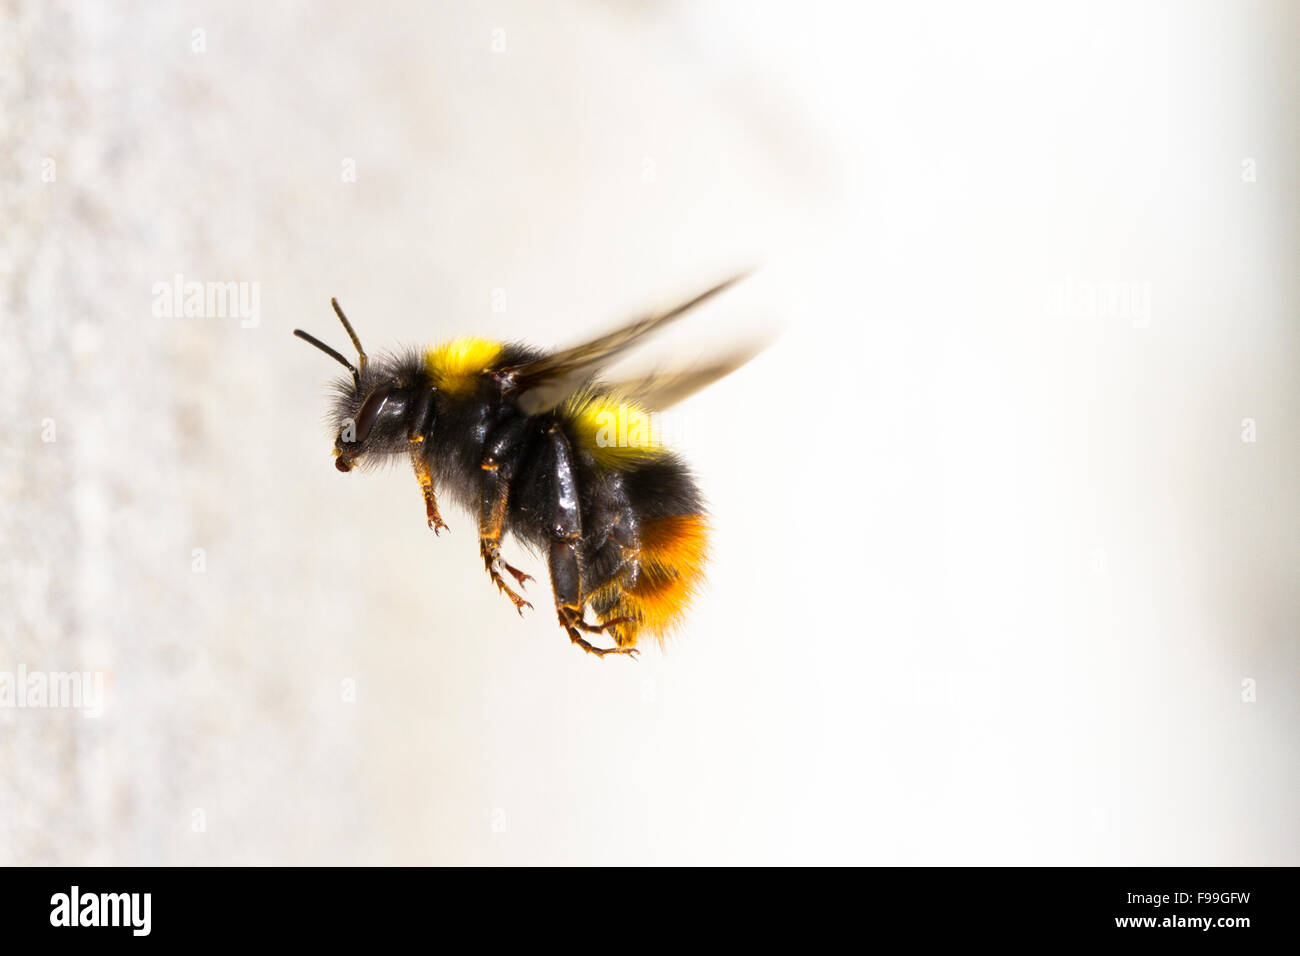 A principios de abejorros (Bombus pratorum) trabajador adulto en vuelo, acercándose a la entrada del nido en un muro de hormigón. Foto de stock